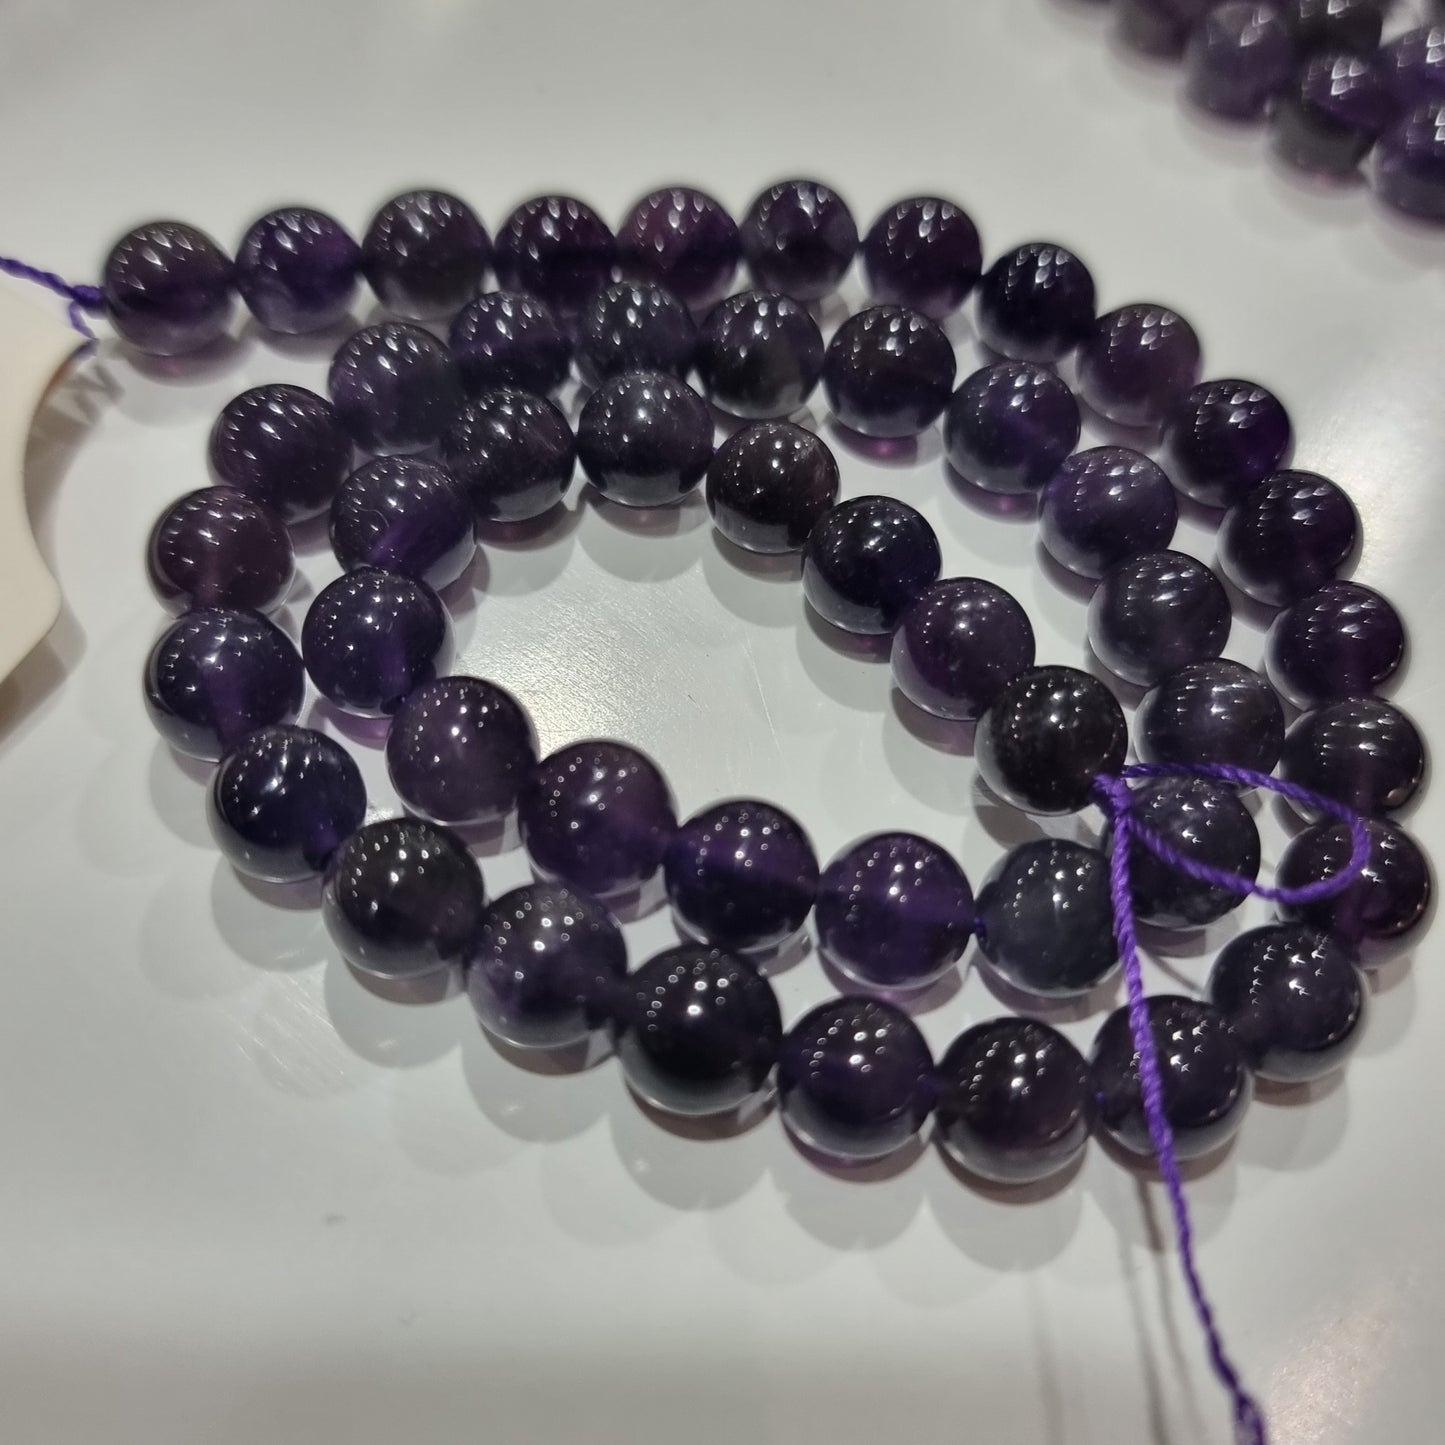 7mm Amethyst Round Gemstone Beads